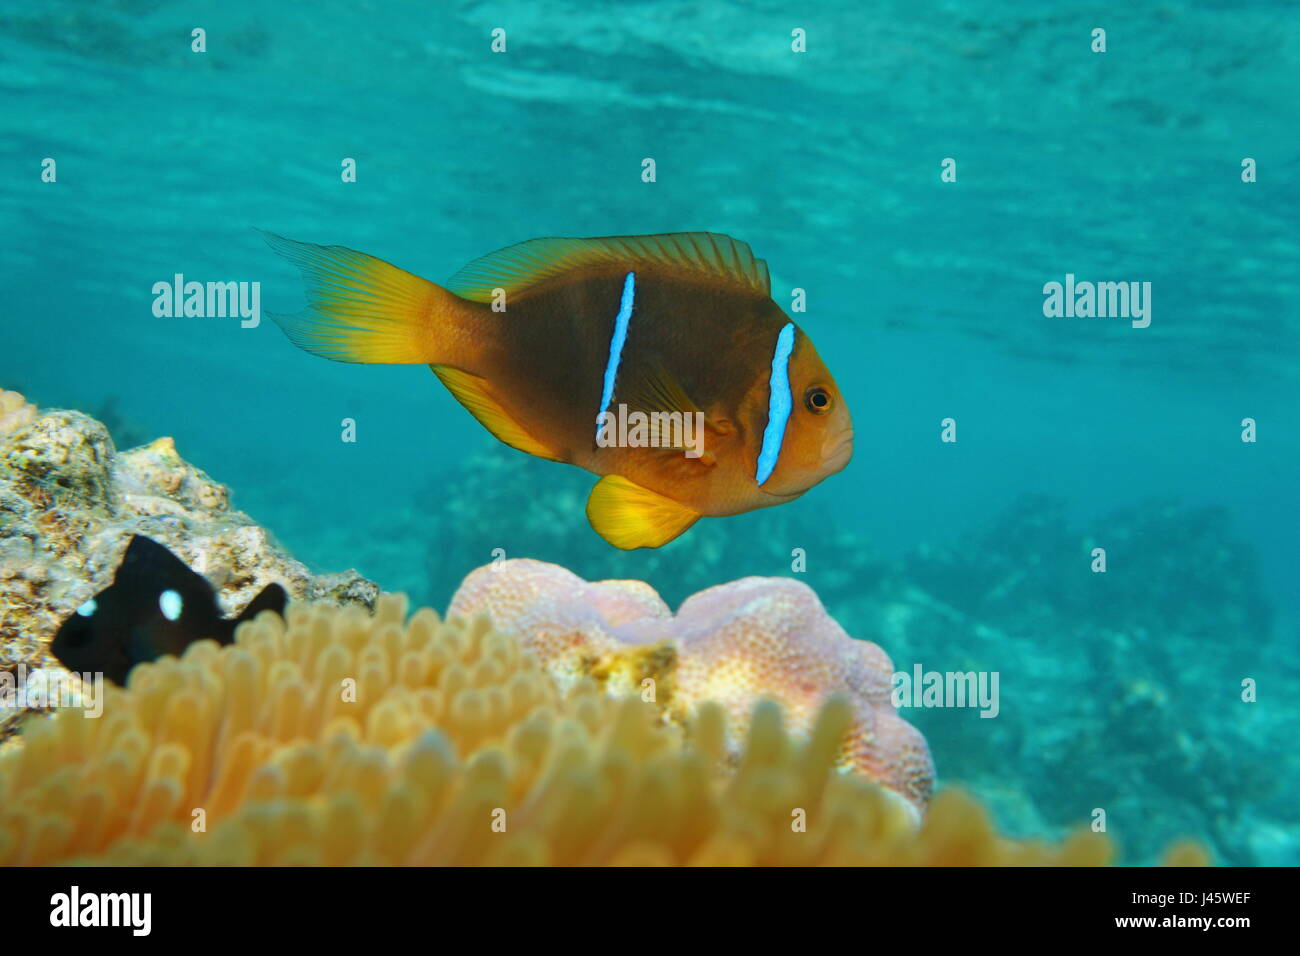 Poissons tropicaux poissons clowns Amphiprion chrysopterus, orange-fin poisson clown sous l'eau dans l'océan Pacifique, Polynésie Française Banque D'Images